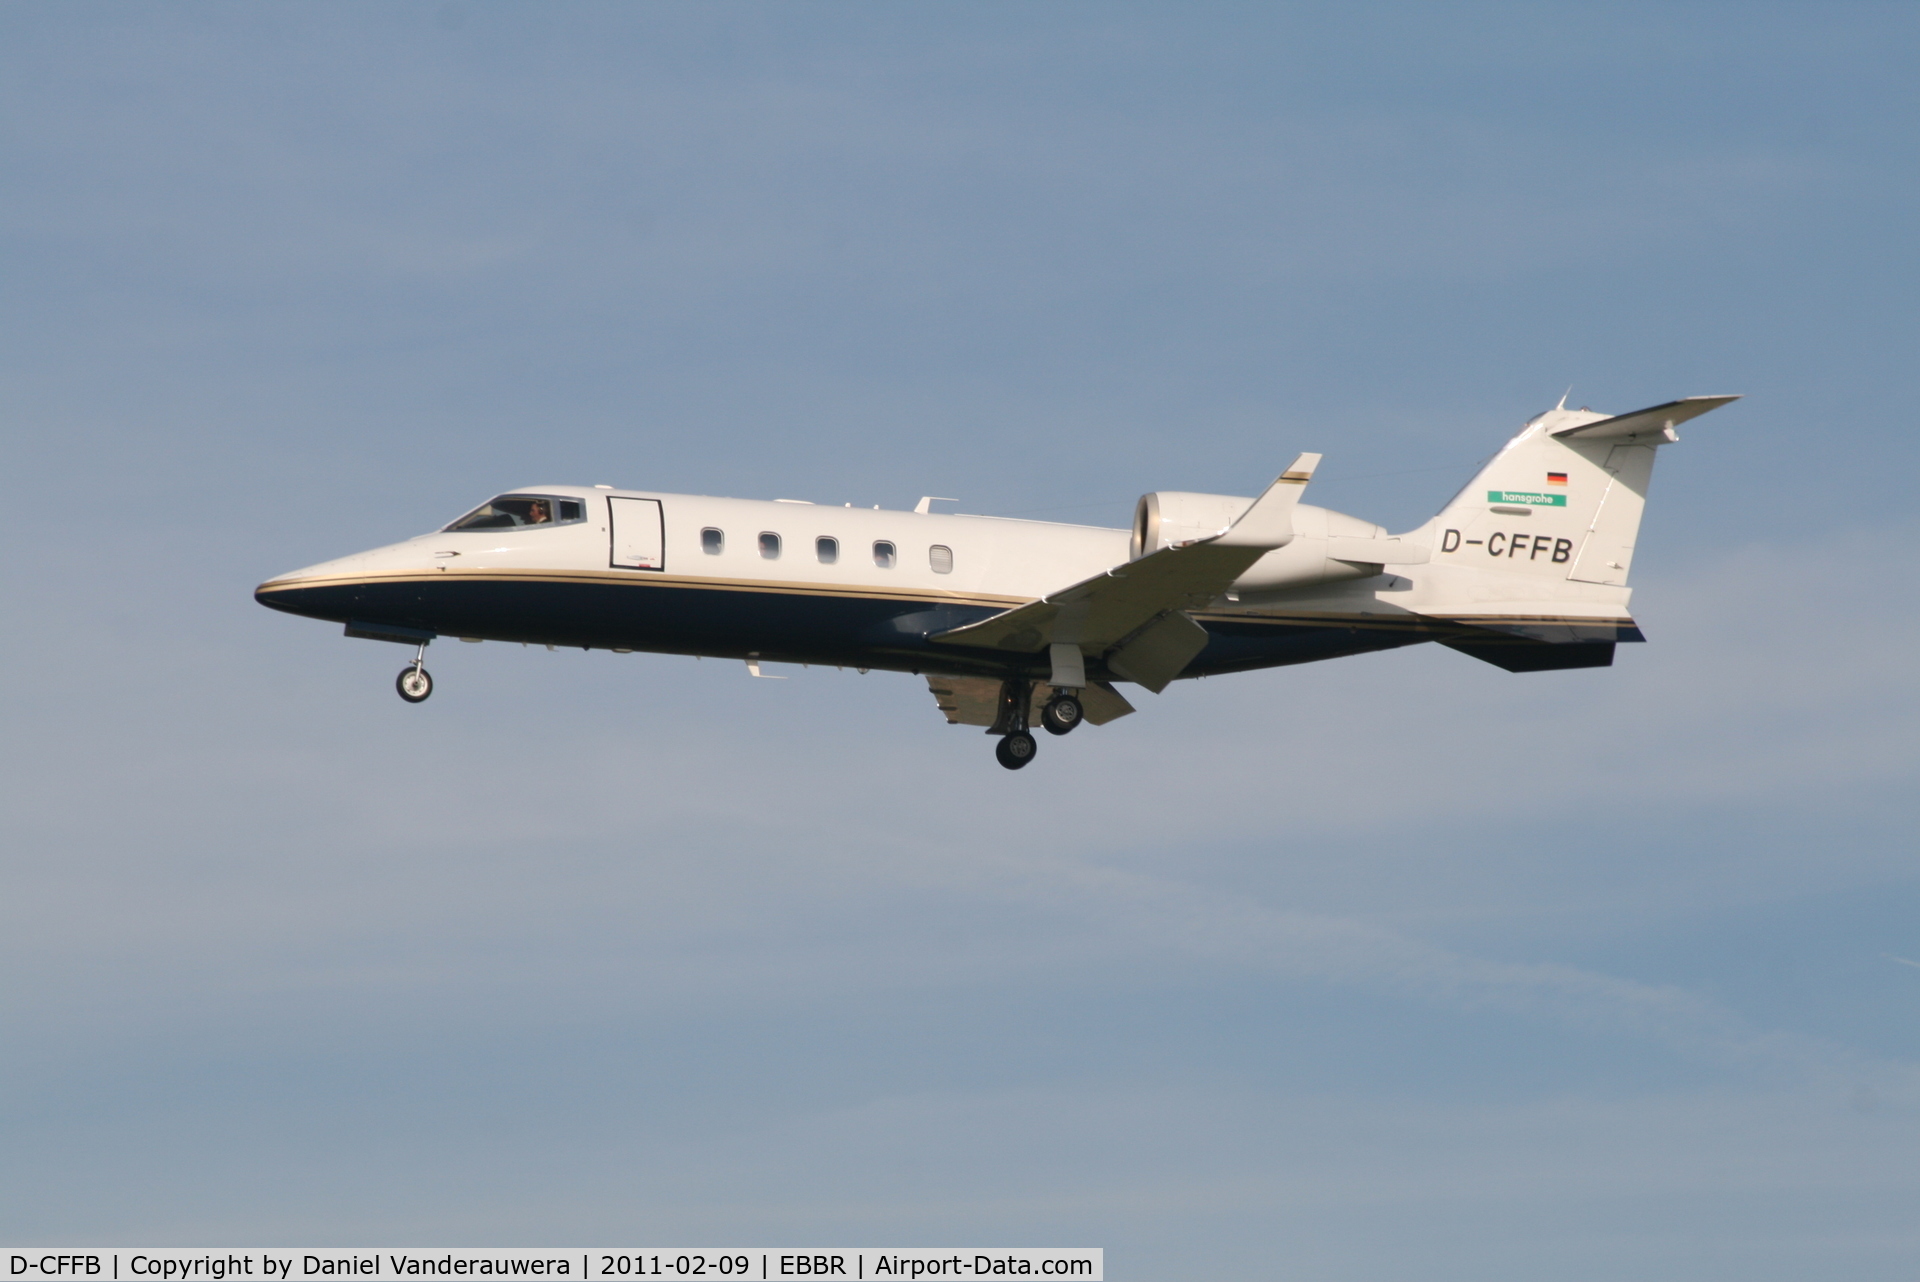 D-CFFB, 1997 Learjet 60 C/N 60-107, Arrival to RWY 25L